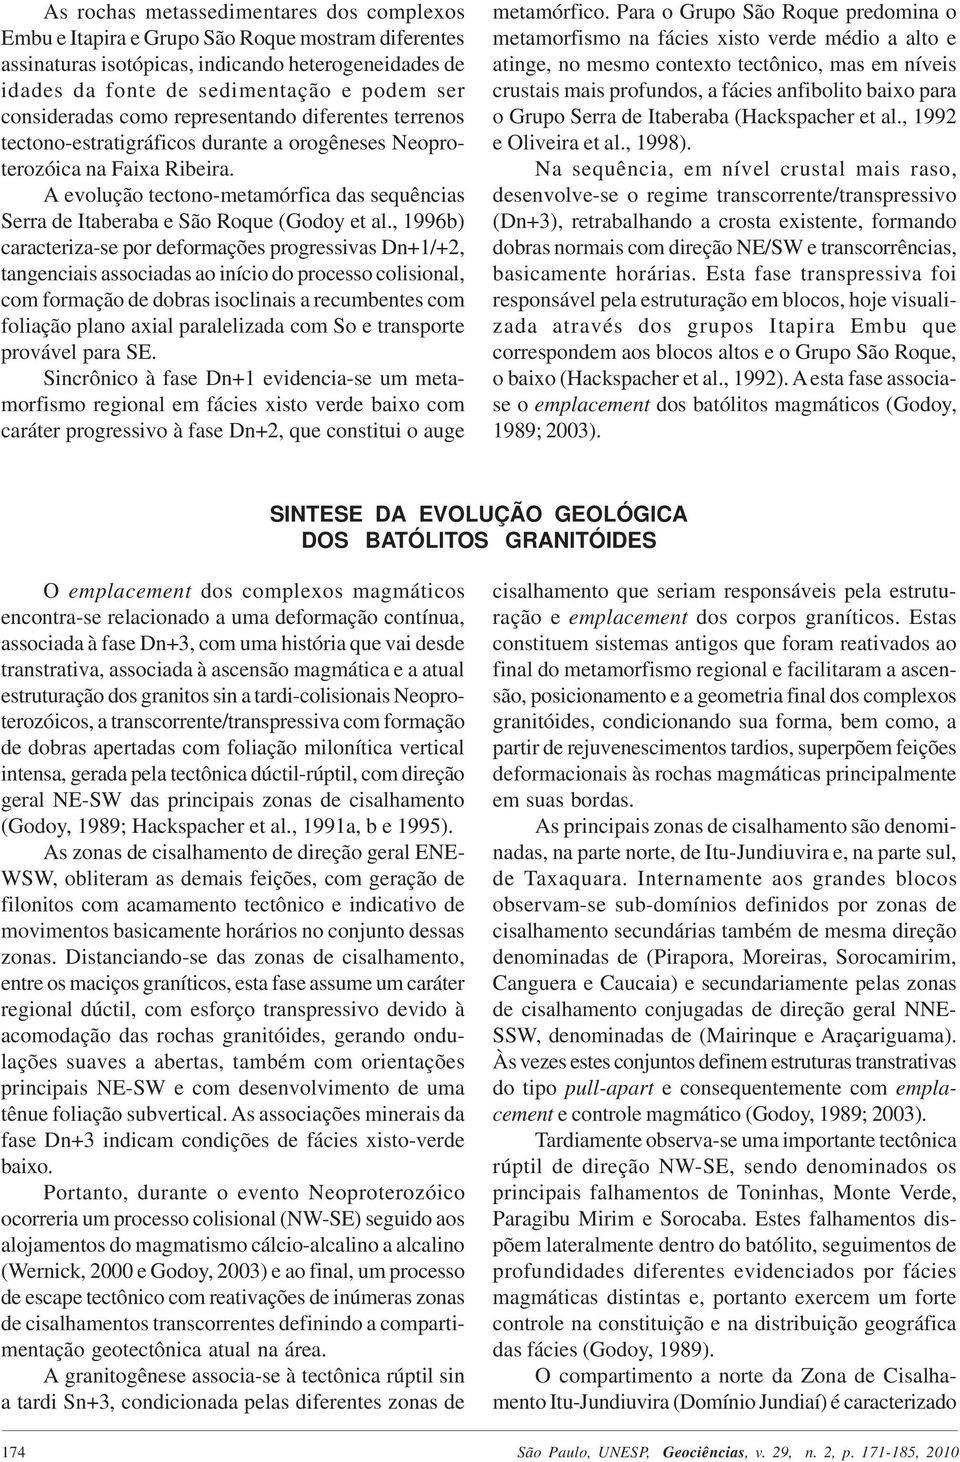 A evolução tectono-metamórfica das sequências Serra de Itaberaba e São Roque (Godoy et al.